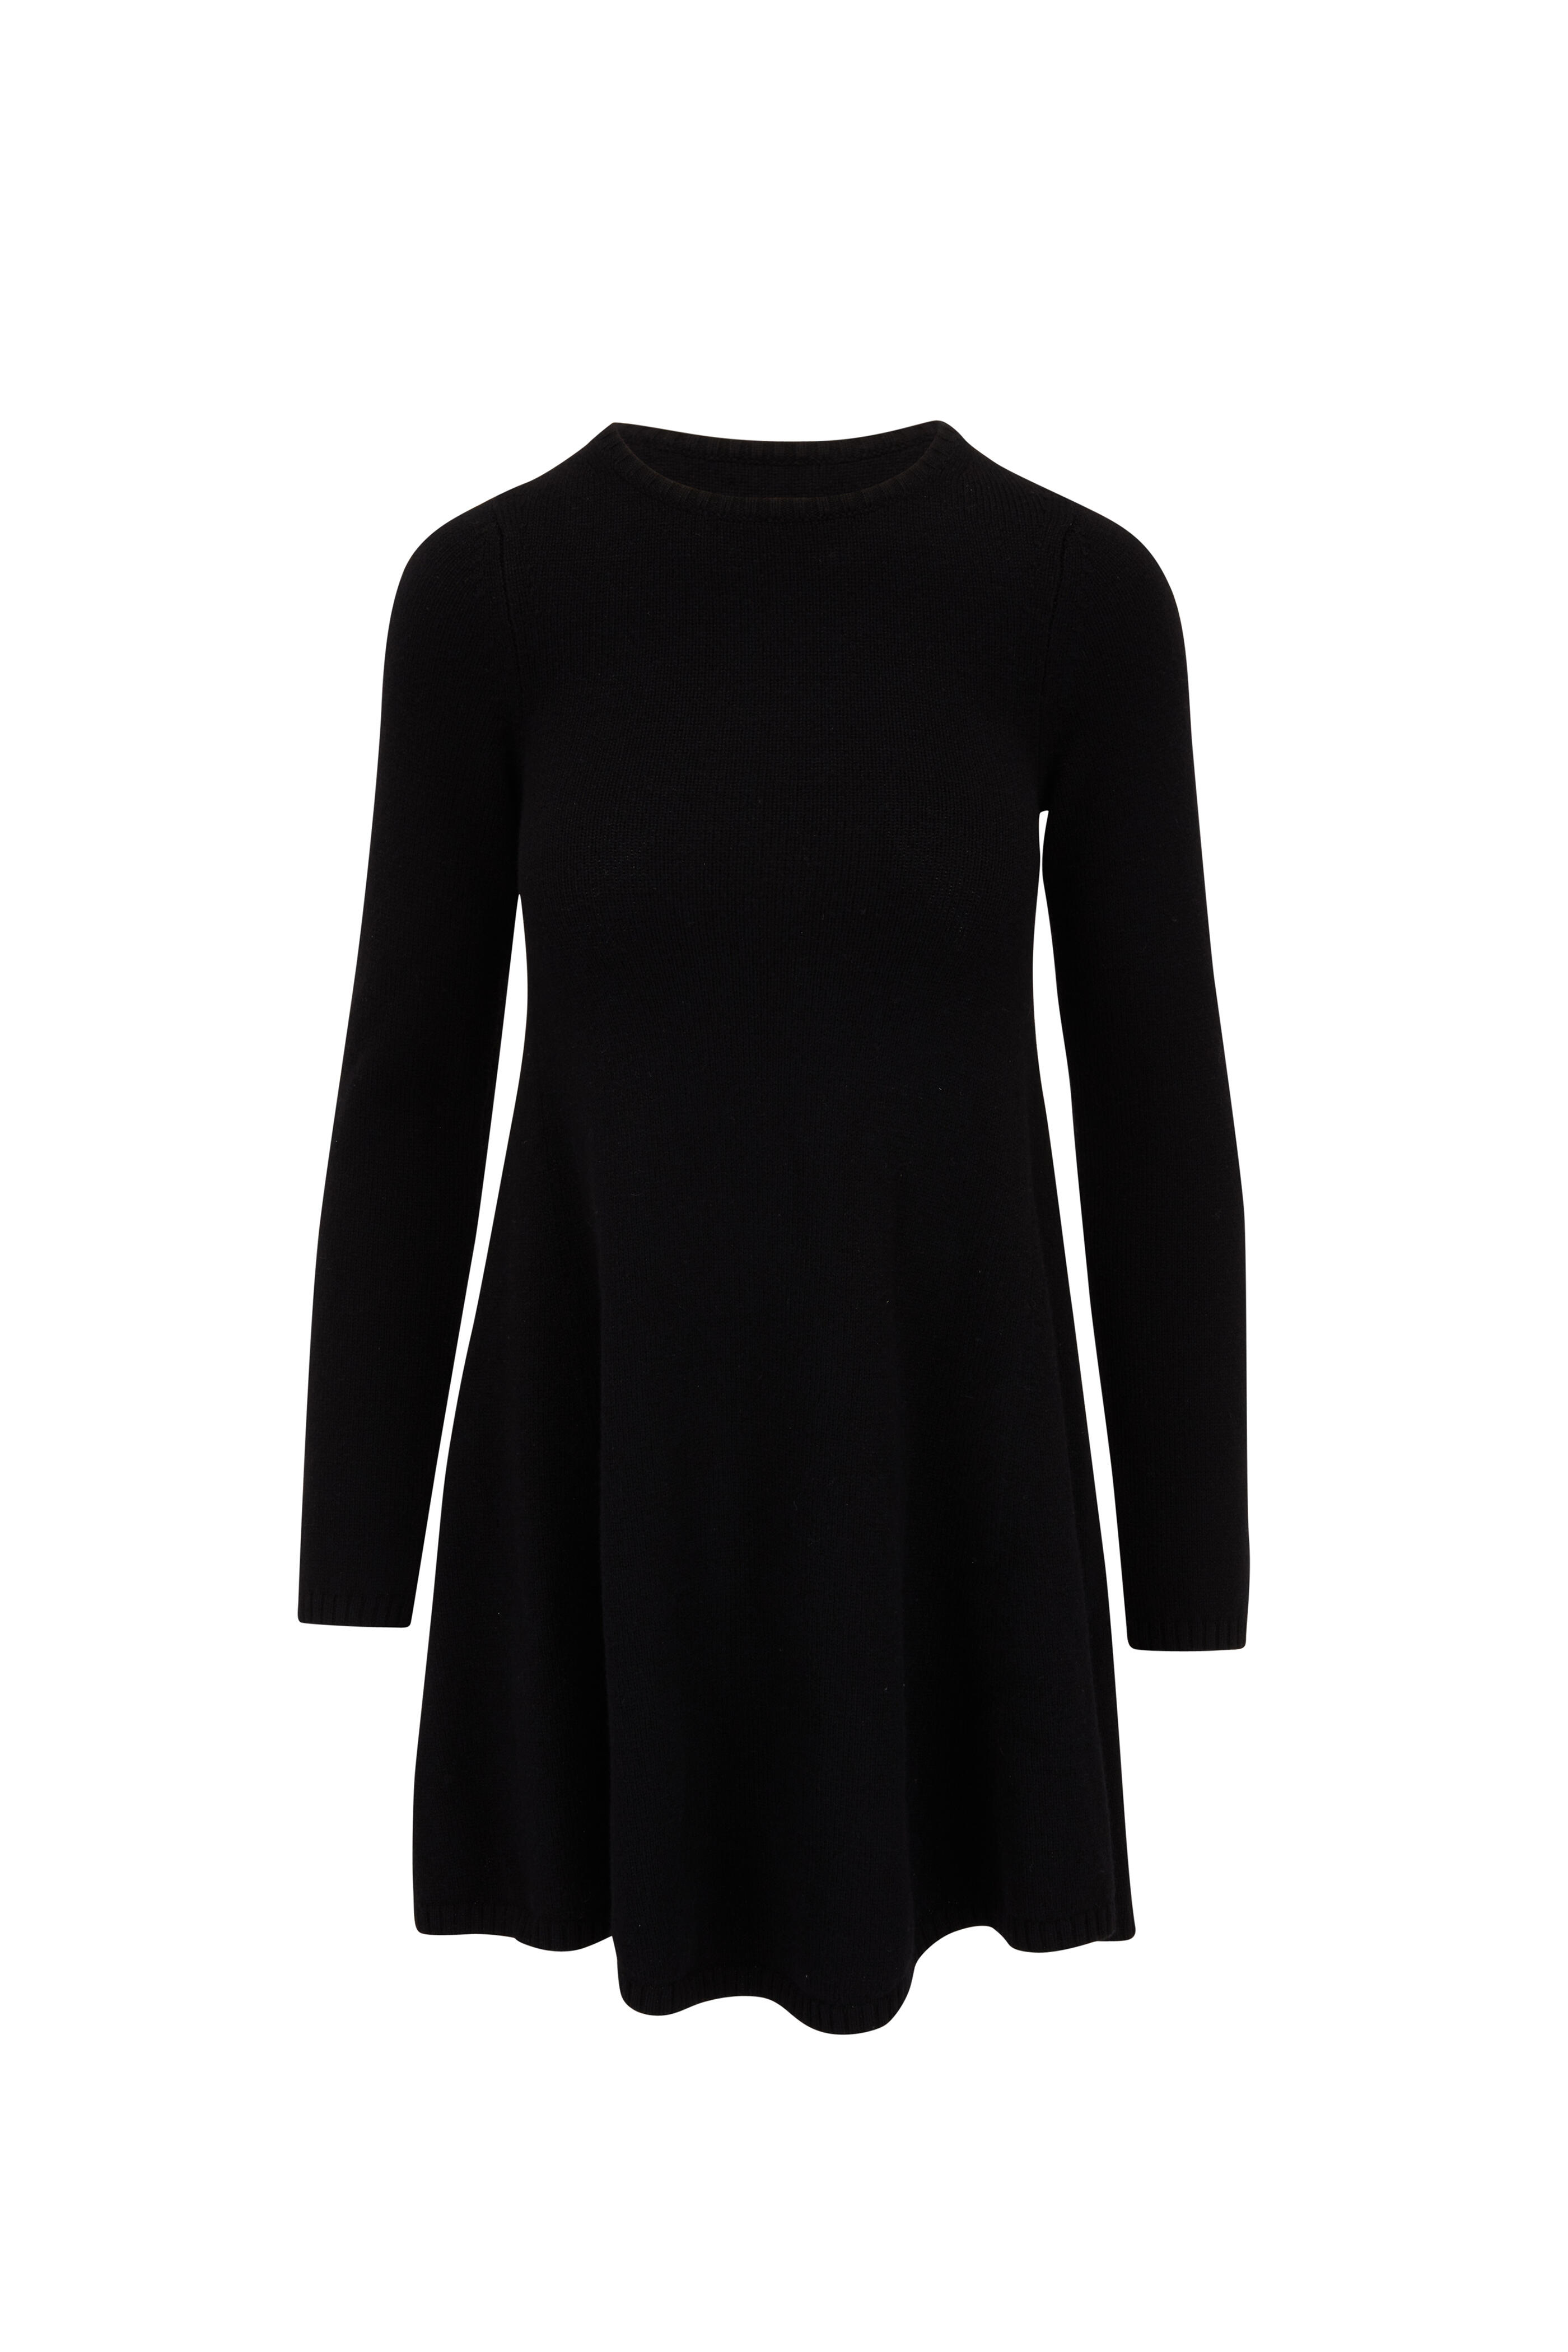 Khaite - Fleurine Black Knit Dress | Mitchell Stores